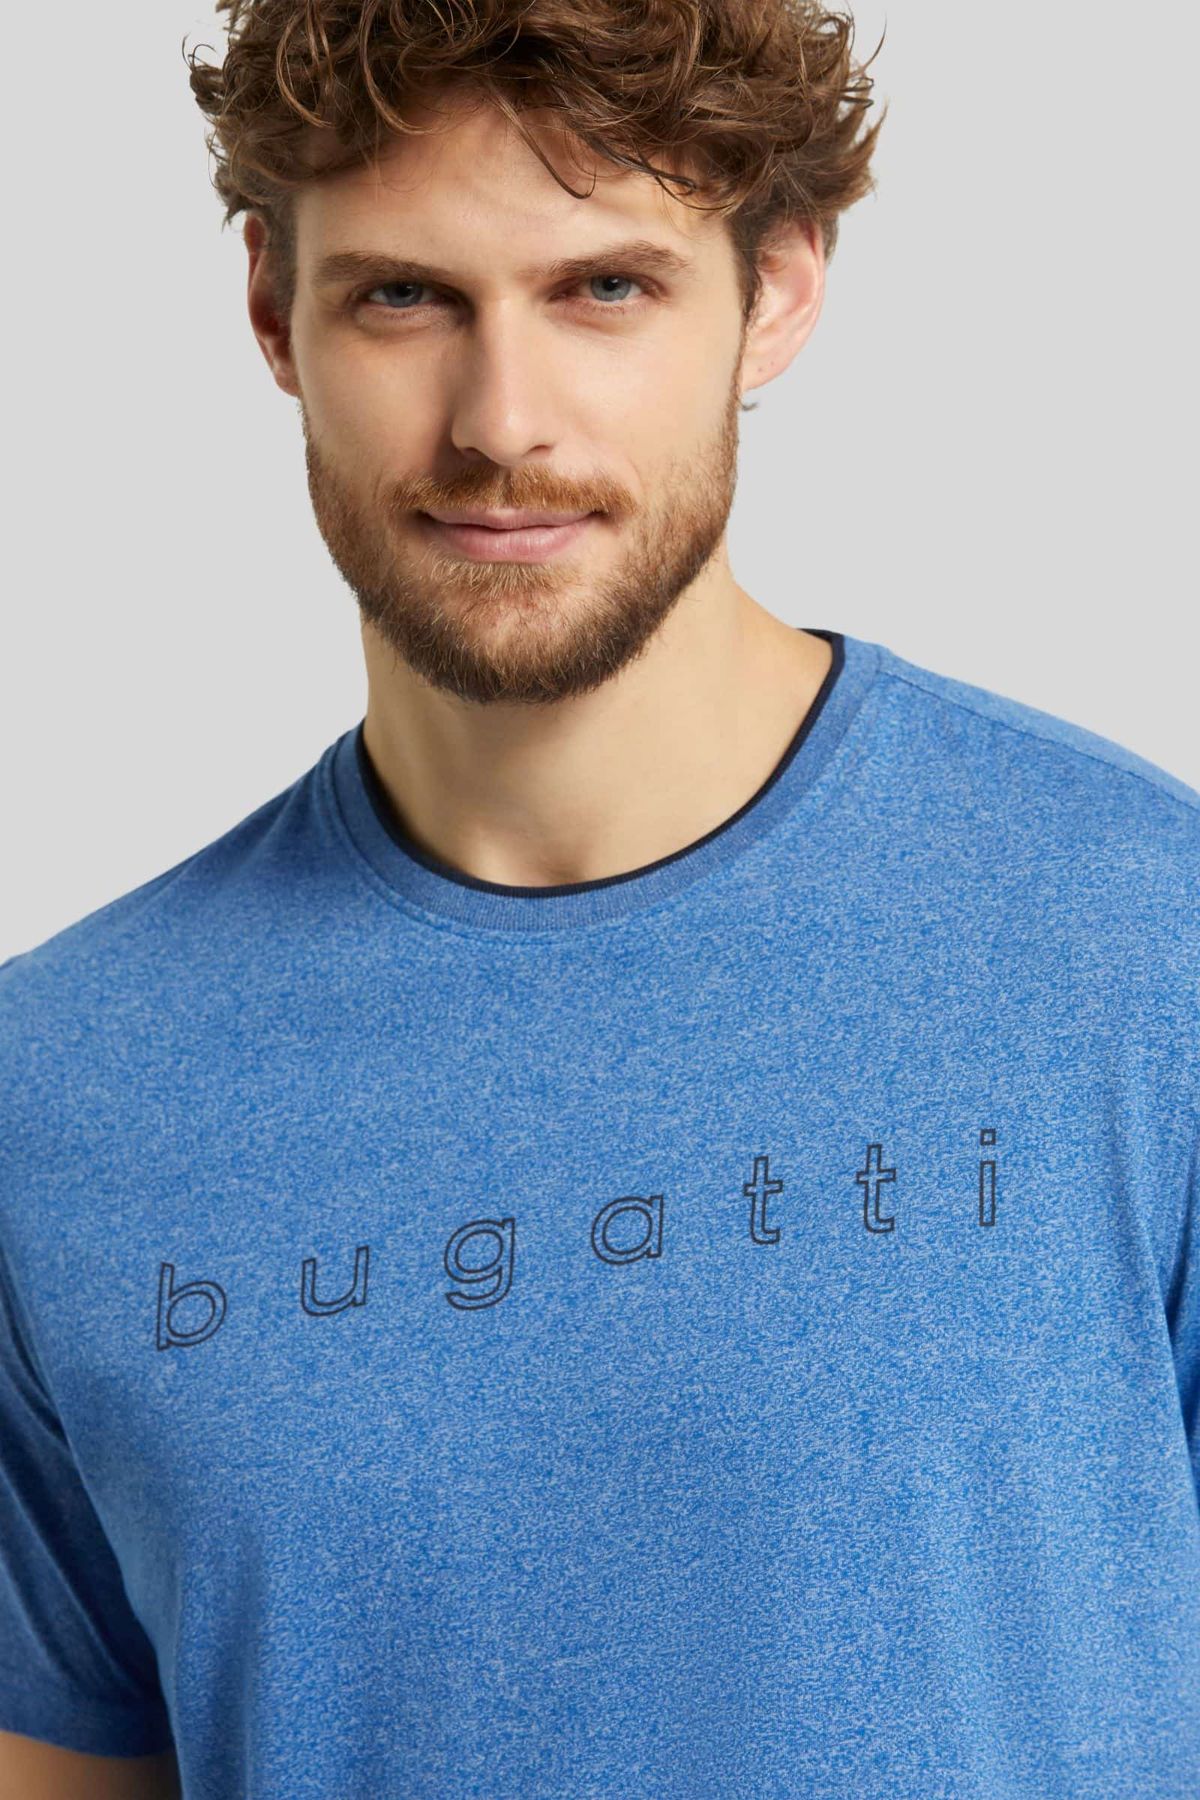 Чоловіча футболка Bugatti 8350 15085/360 Синя S